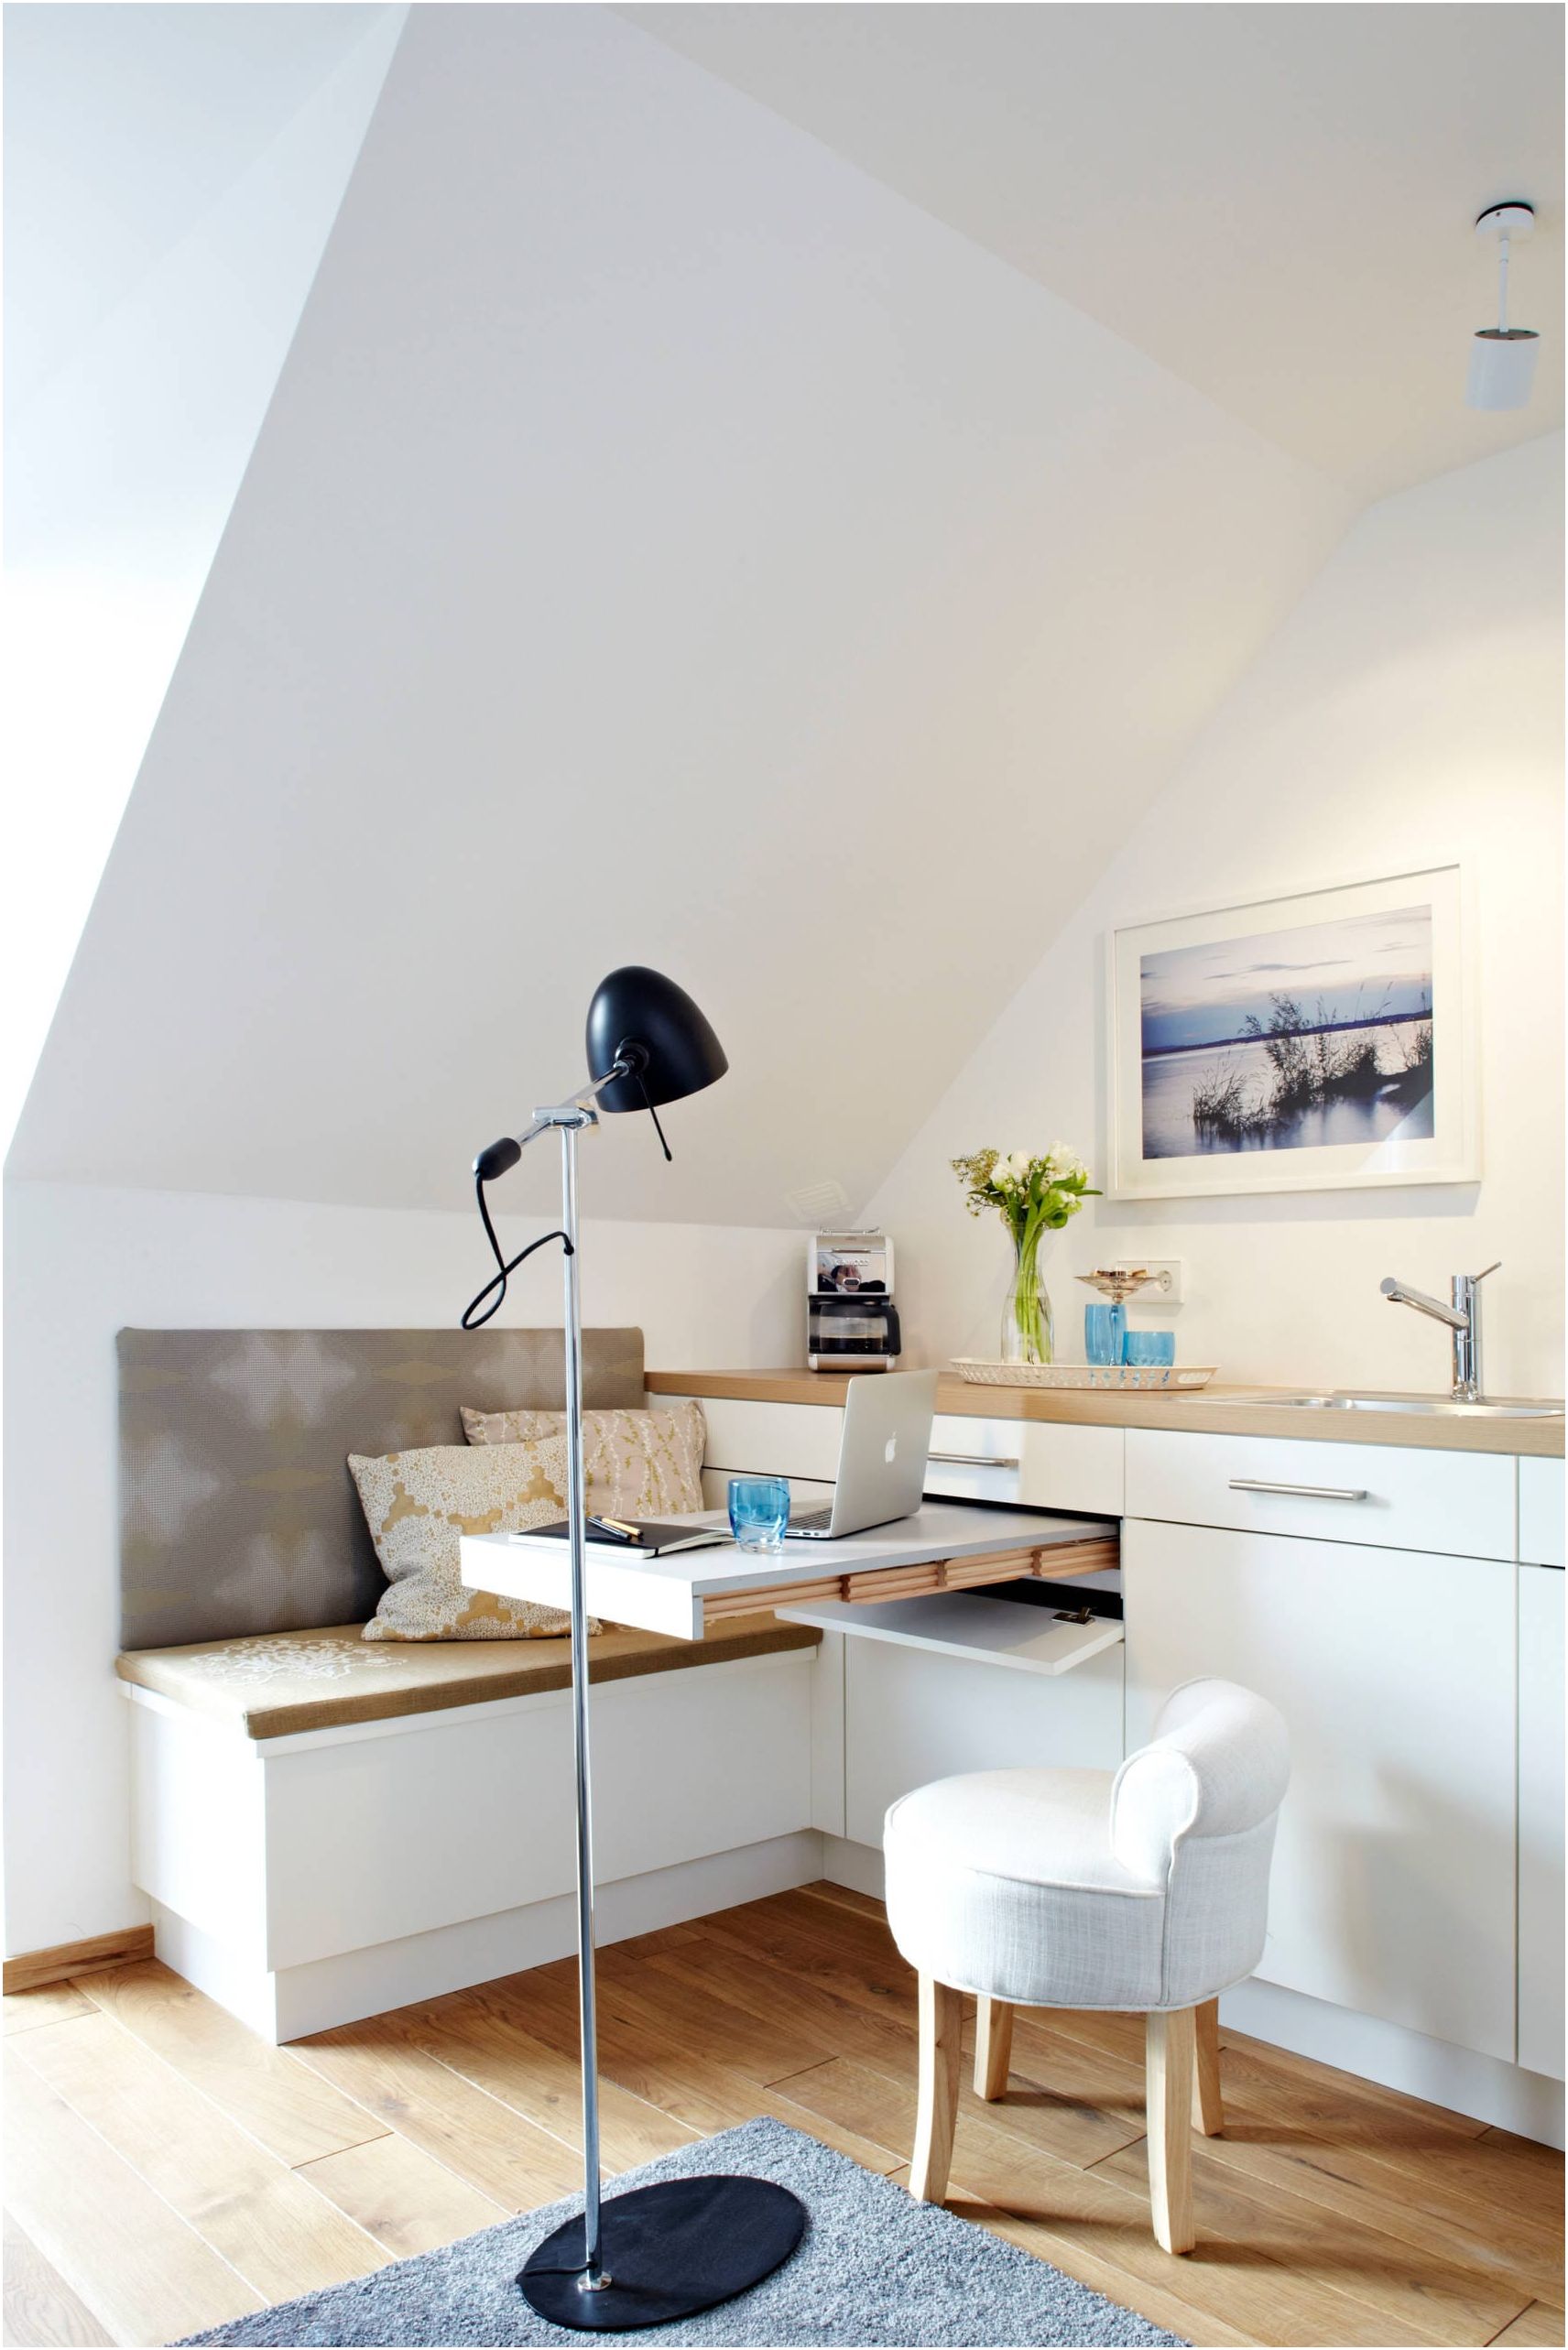 غرفة معيشة حديثة مع مطبخ صغير: أفكار للاستخدام الرشيد للمساحة 15 متر مربع. م